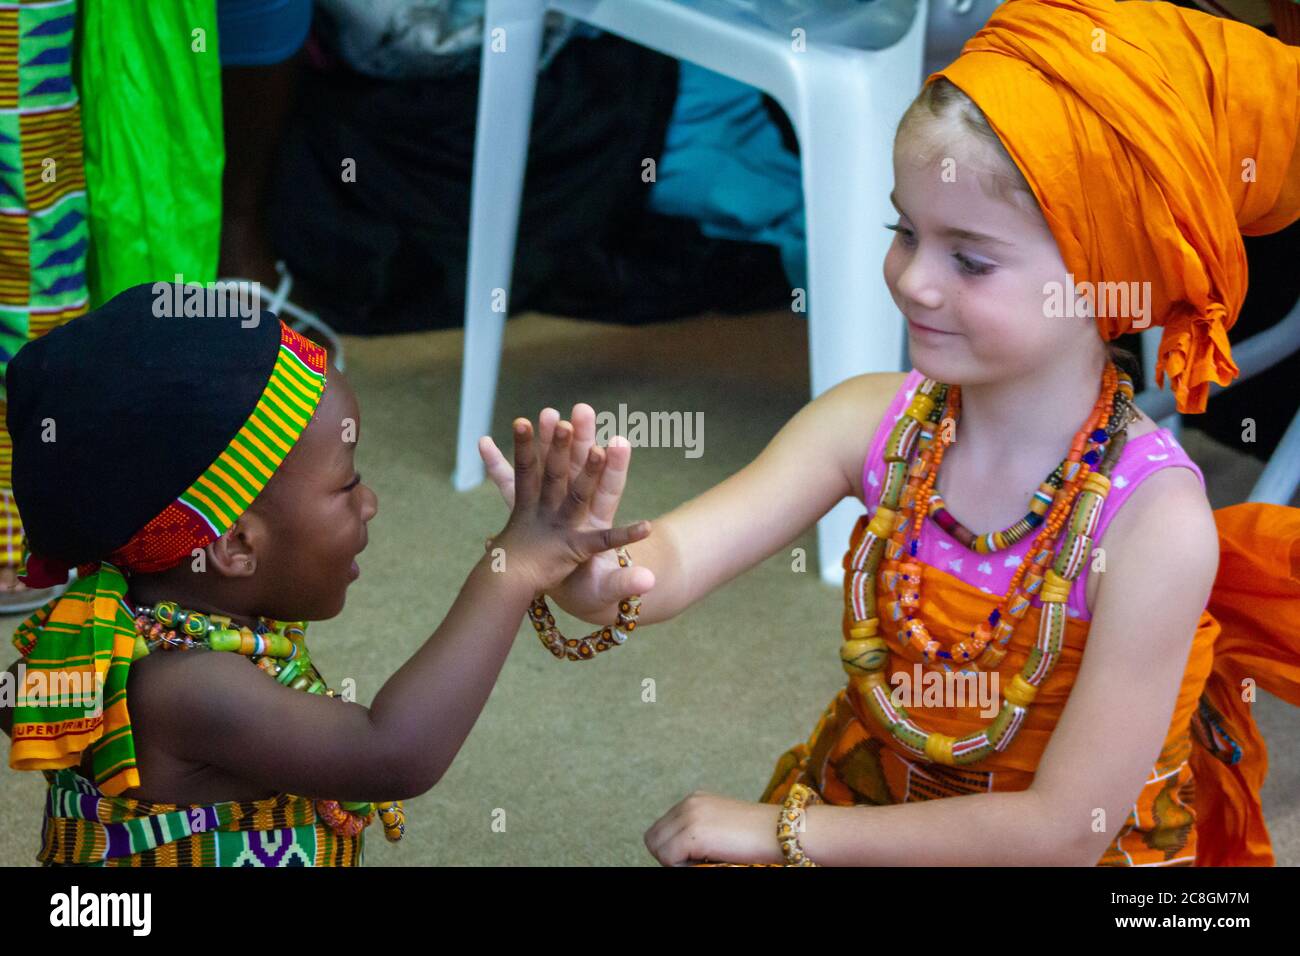 Afrikanische und weiße (kaukasische) Mädchen sitzen zusammen, schauen sich gegenseitig an und berühren die Hände Stockfoto